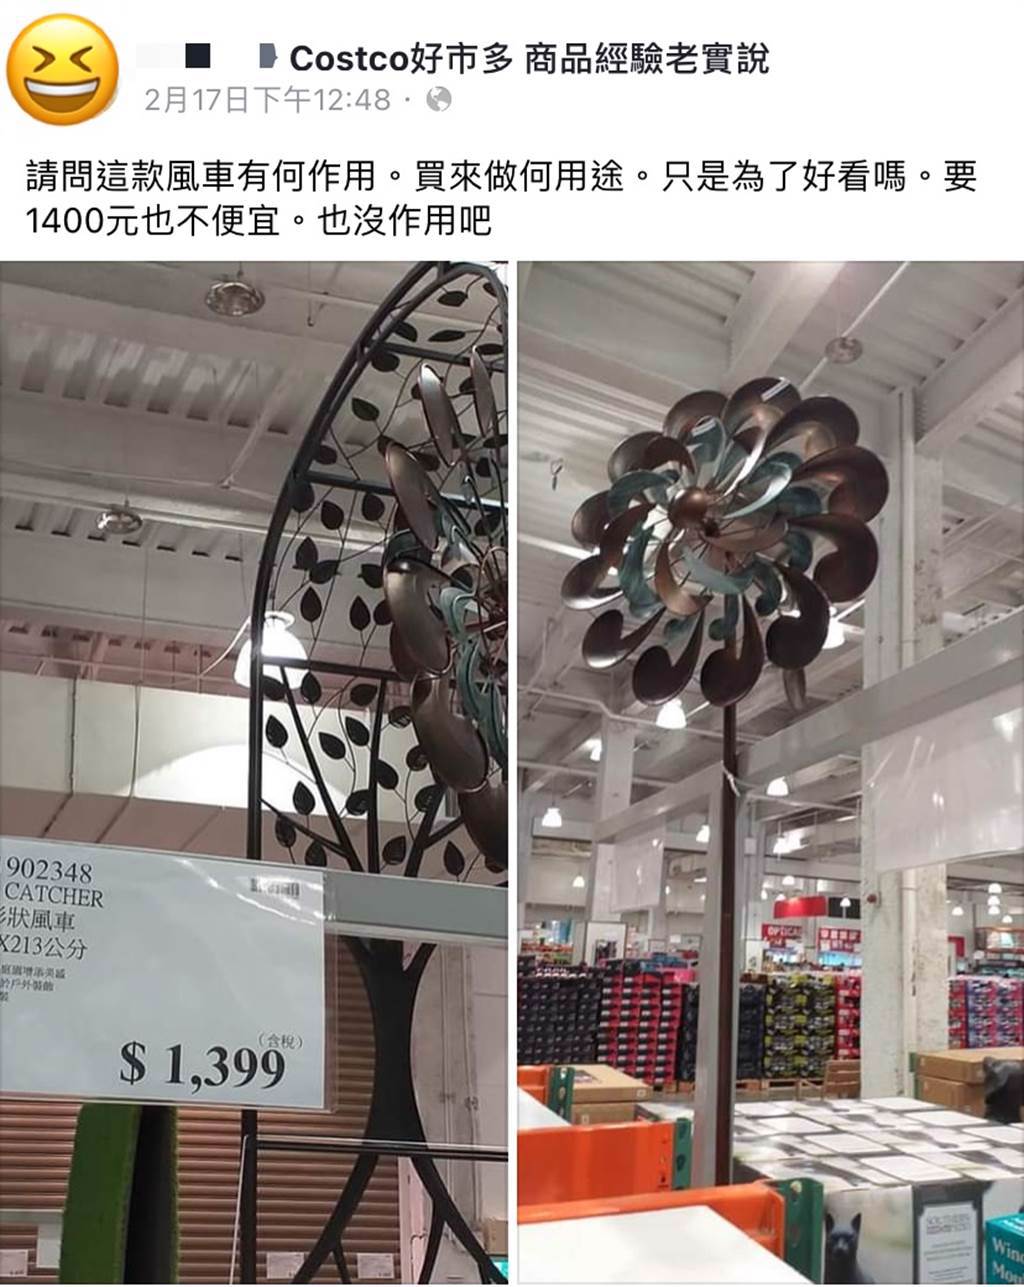 這款商品名為「花朵形狀風車」，高度為213公分，在買場裡展示看起來相當顯眼。(圖擷取自Costco好市多 商品經驗老實說)